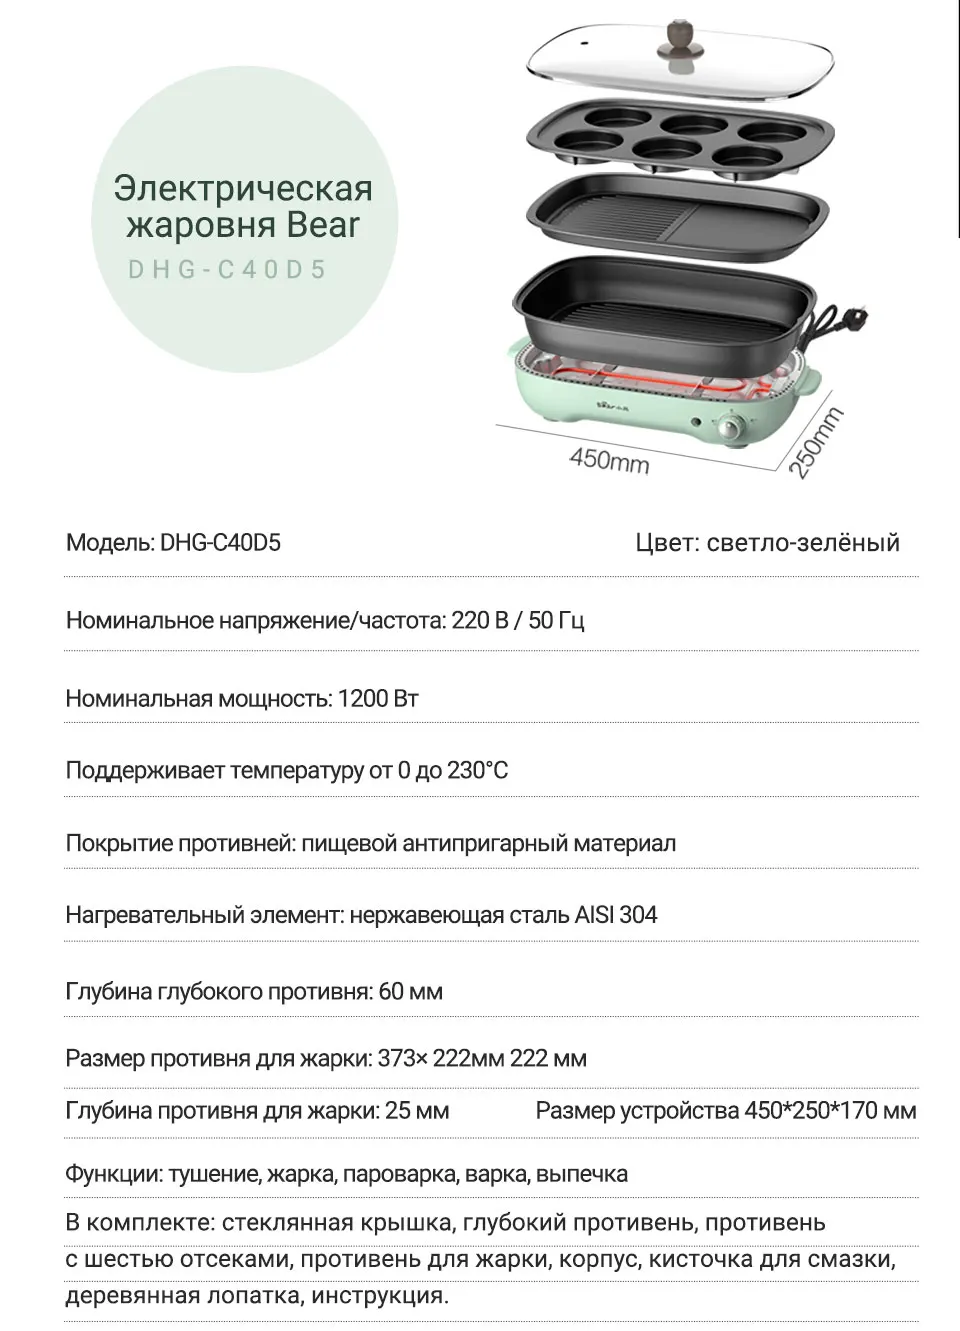 Многофункциональная электрическая жаровня Bear DHG-C40D5 за 5690 .